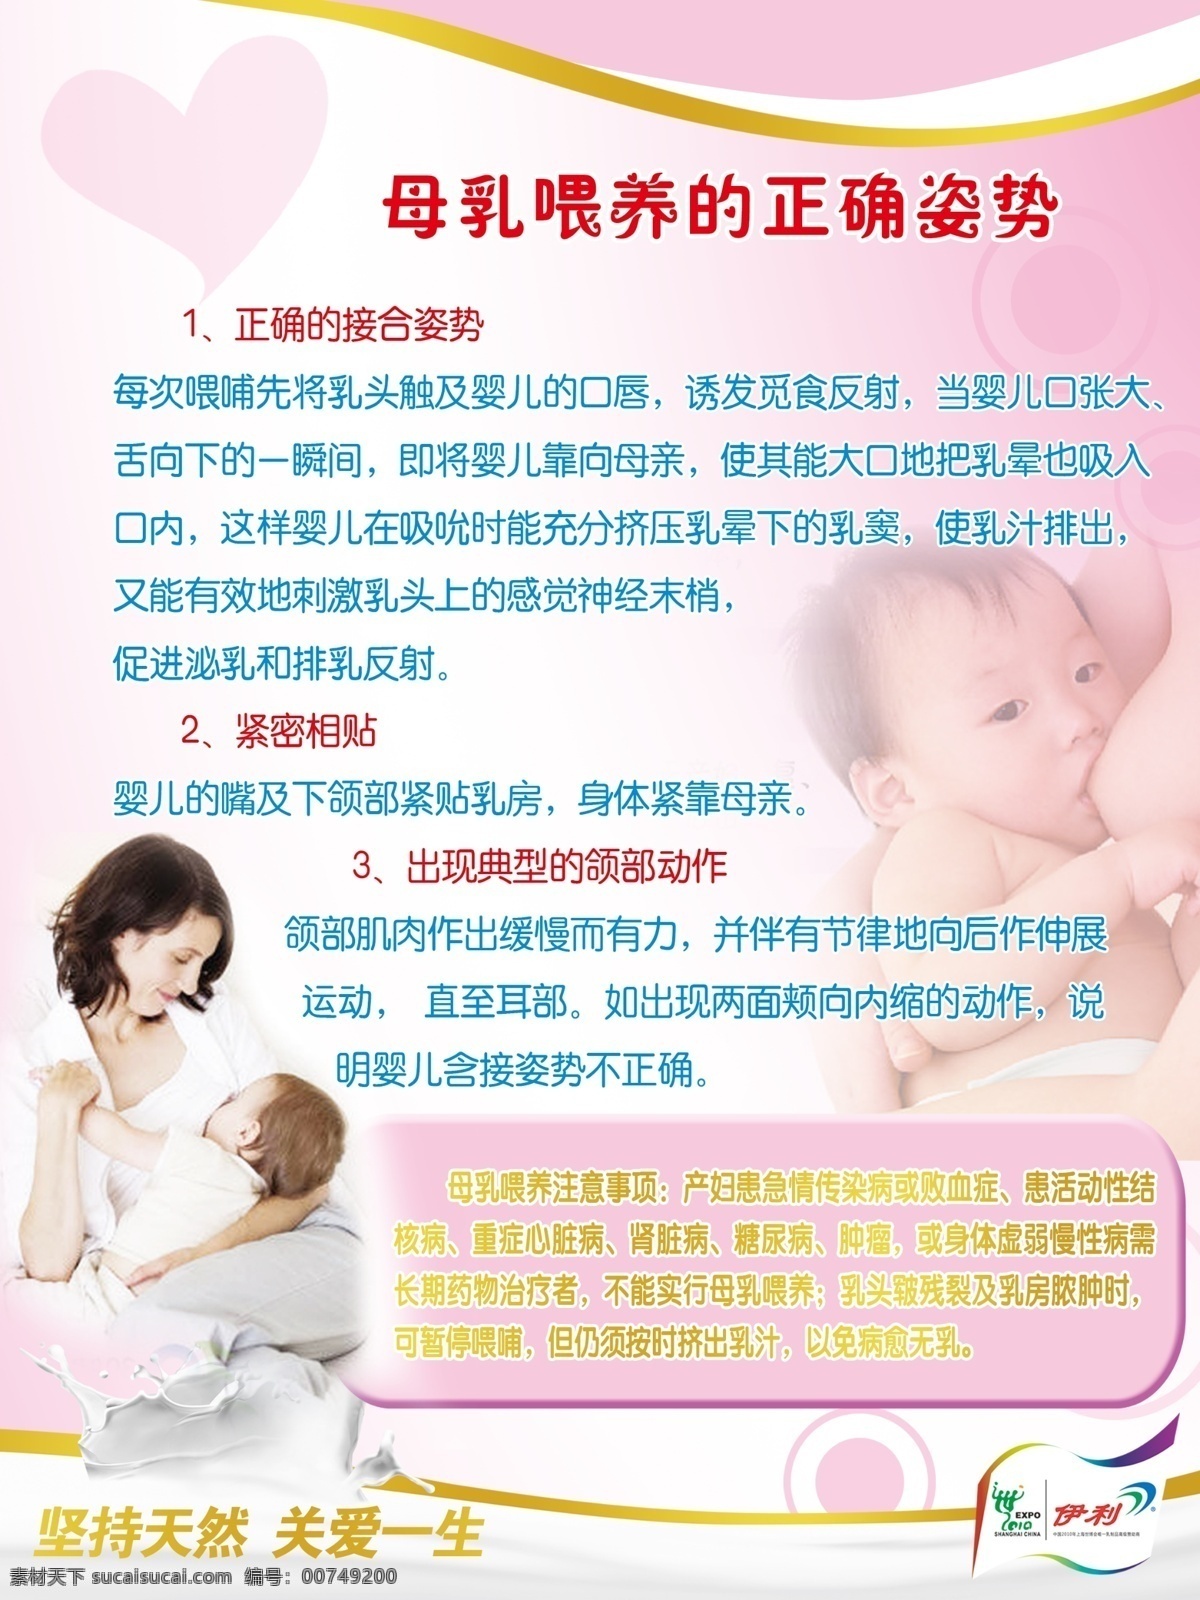 母乳 喂养 正确 姿势 心 伊利标 奶浪 人 小孩子 婴儿 展板模板 广告设计模板 源文件